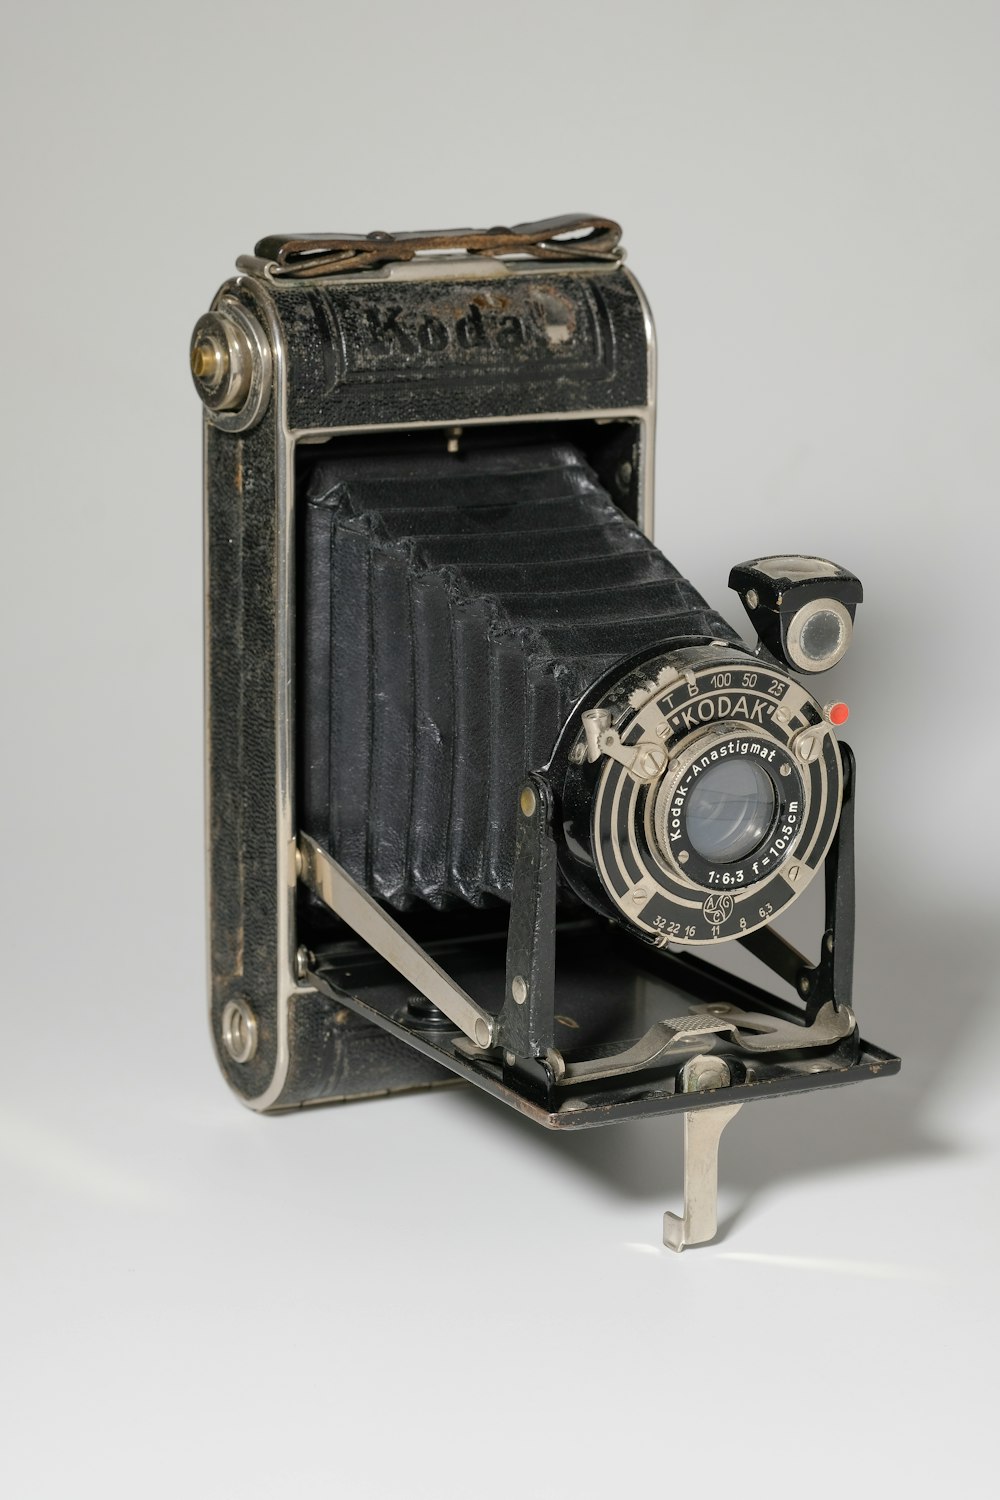 Más de 500 fotos de cámaras antiguas | Descargar imágenes gratis en Unsplash